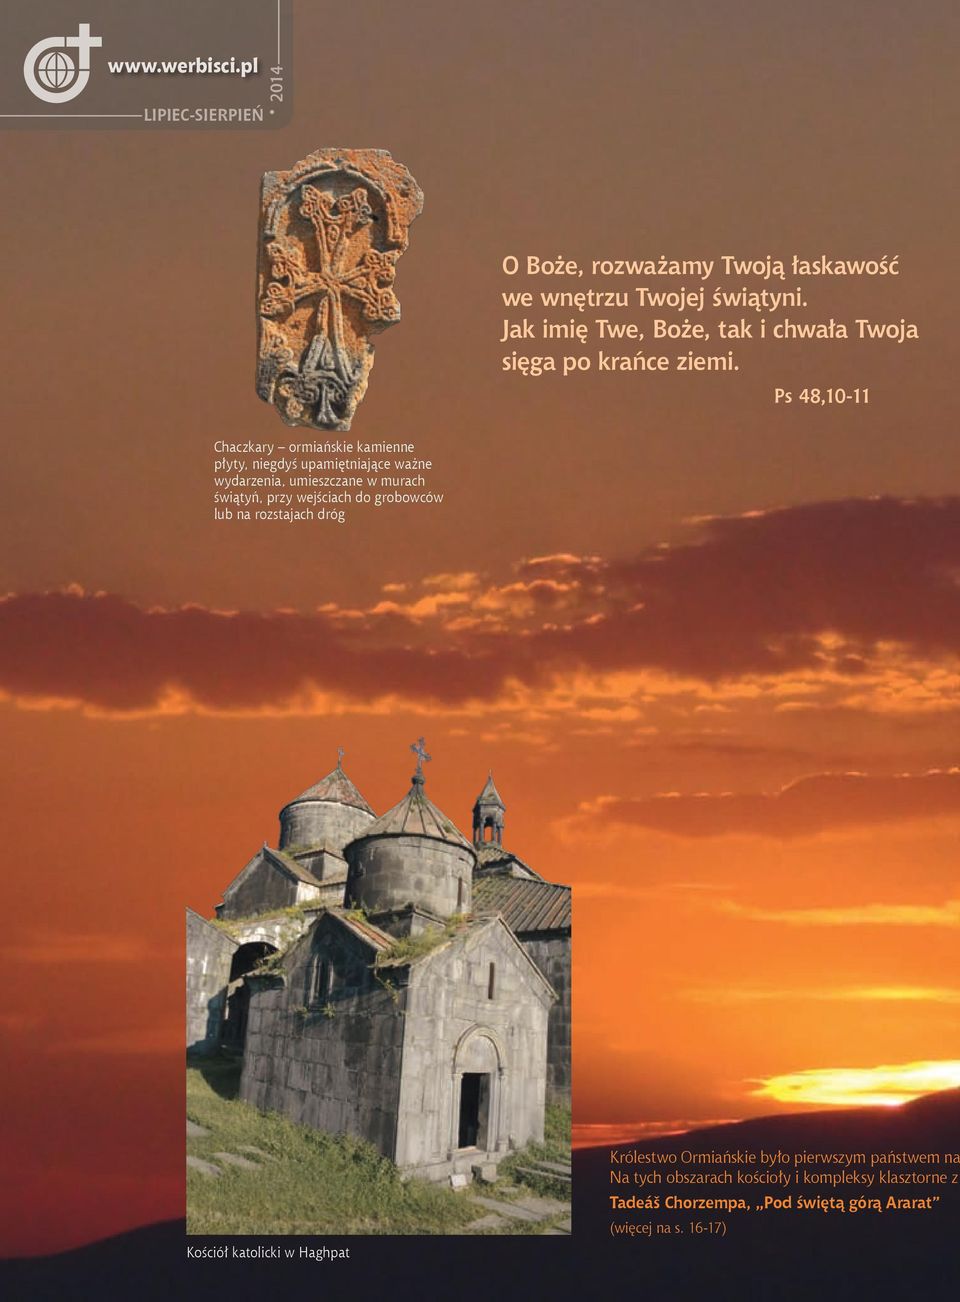 Ps 48,10-11 Chaczkary ormiańskie kamienne płyty, niegdyś upamiętniające ważne wydarzenia, umieszczane w murach świątyń, przy